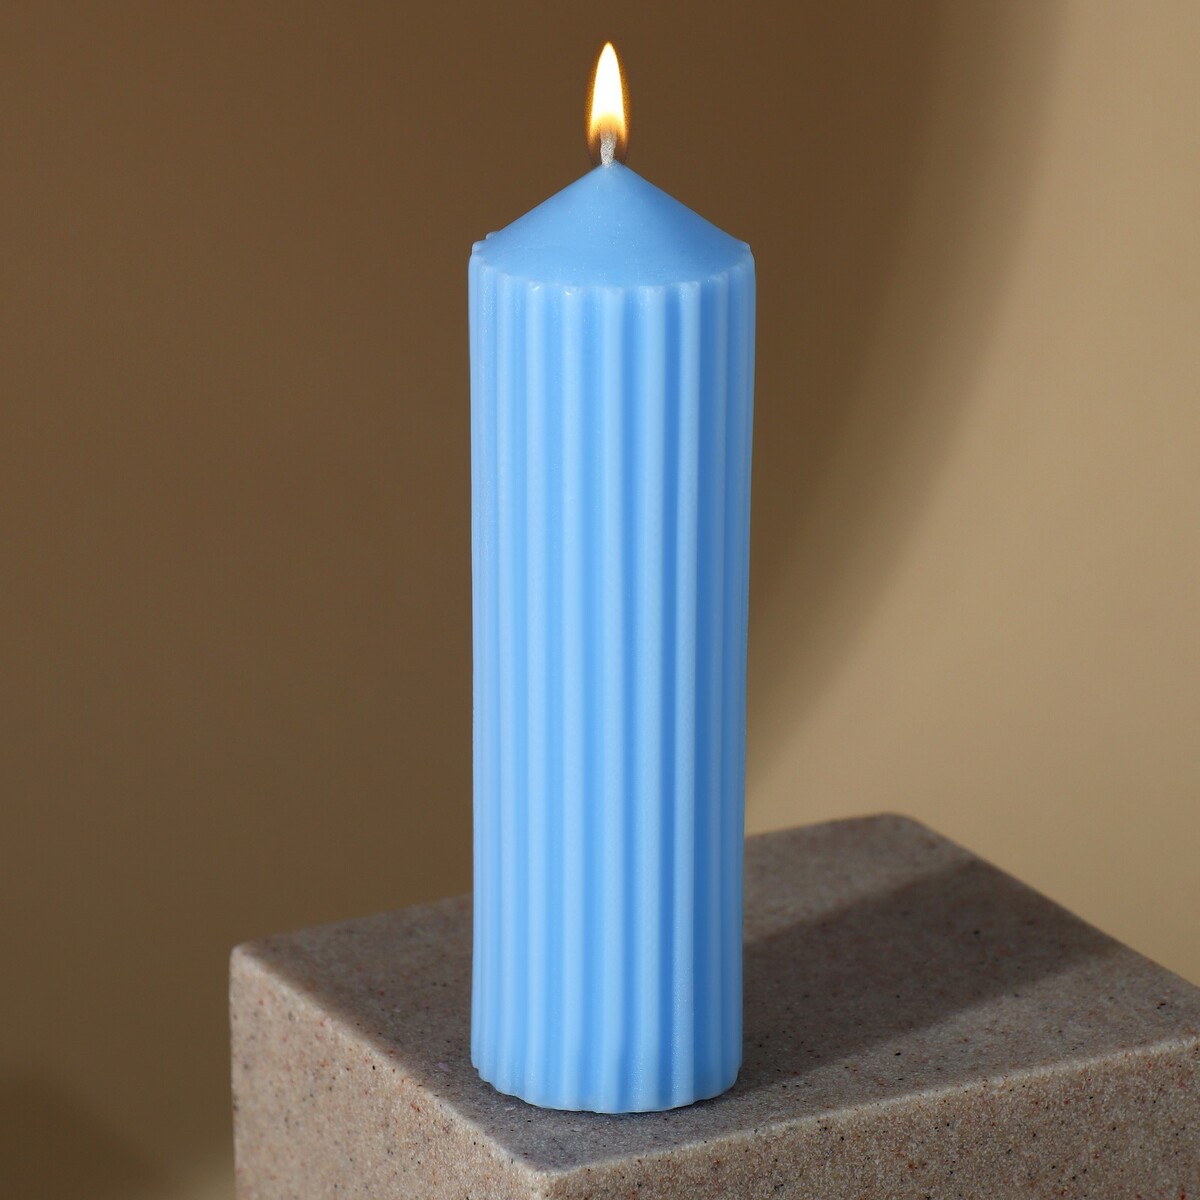 Свеча интерьерная столбик свеча столбик с бетоном поталь белый 10 х 5 см